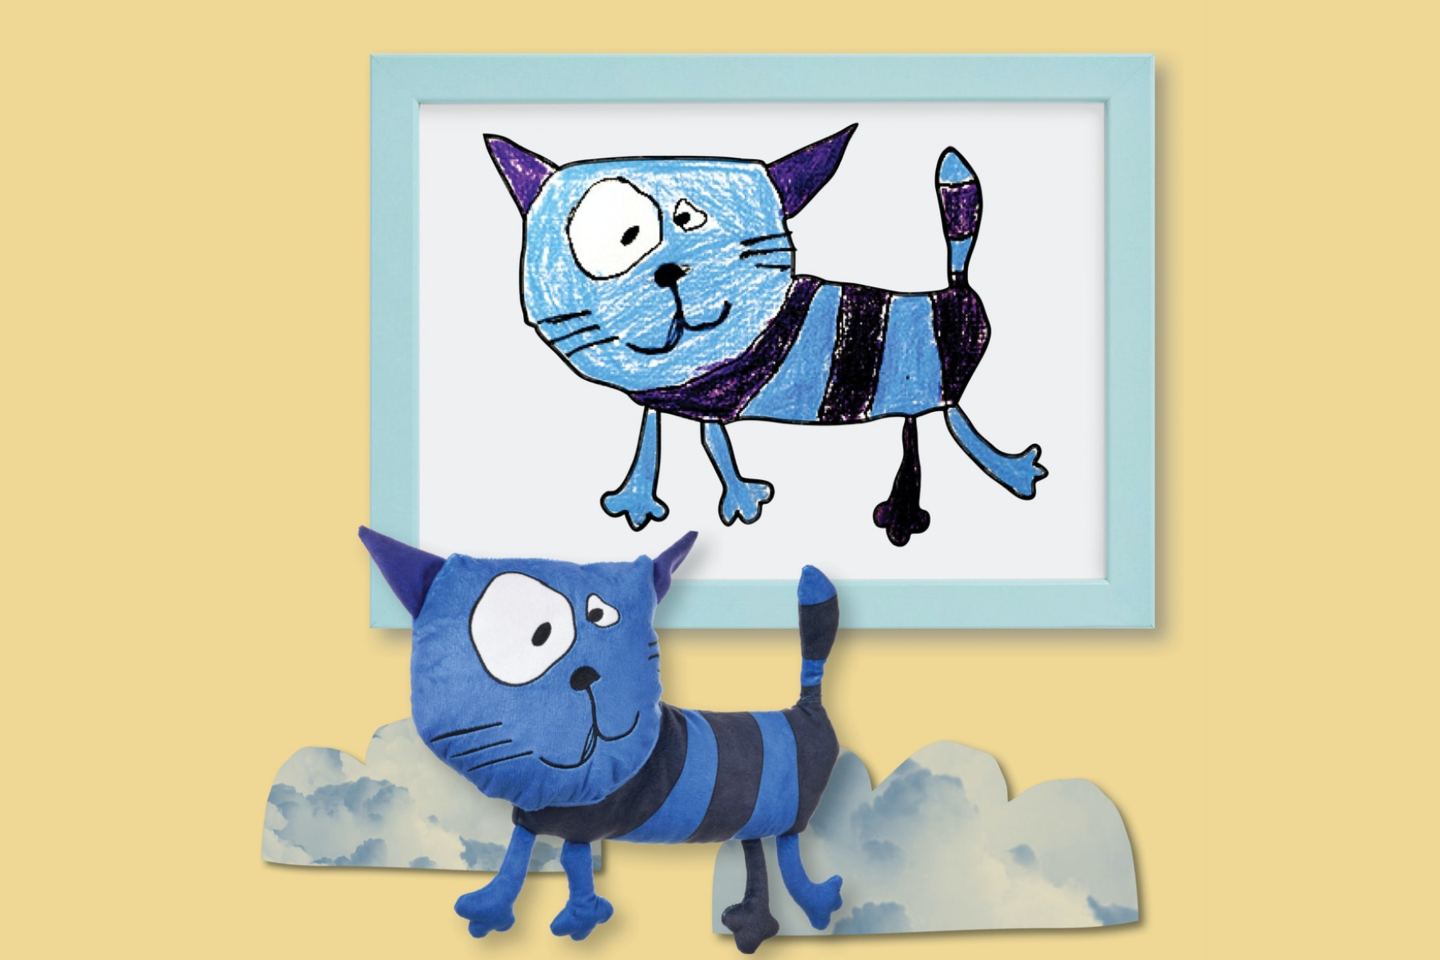 Mėlynas pliušinis katinas, pasiūlytas lietuvės Liepos, buvo atrinktas iš daugiau nei 66 tūkstančių vaikų piešinių iš viso pasaulio.<br>IKEA nuotr.